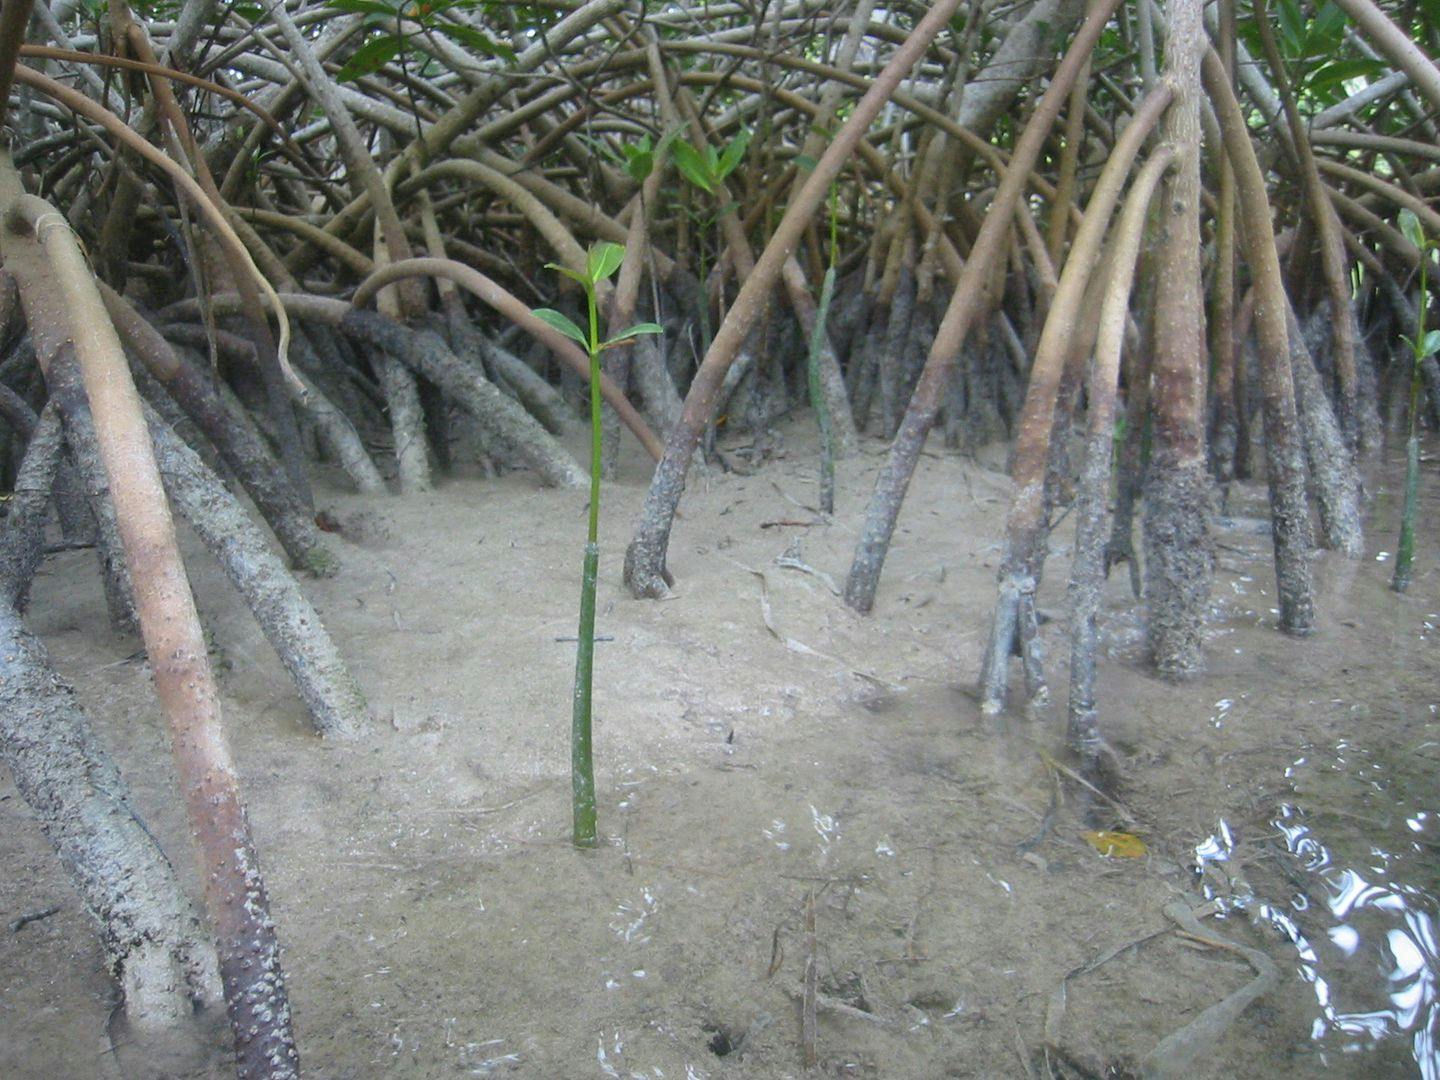 Mangrove har støttestammer som gjør dem stabile i mudderet. Foto: Ronald Toppe